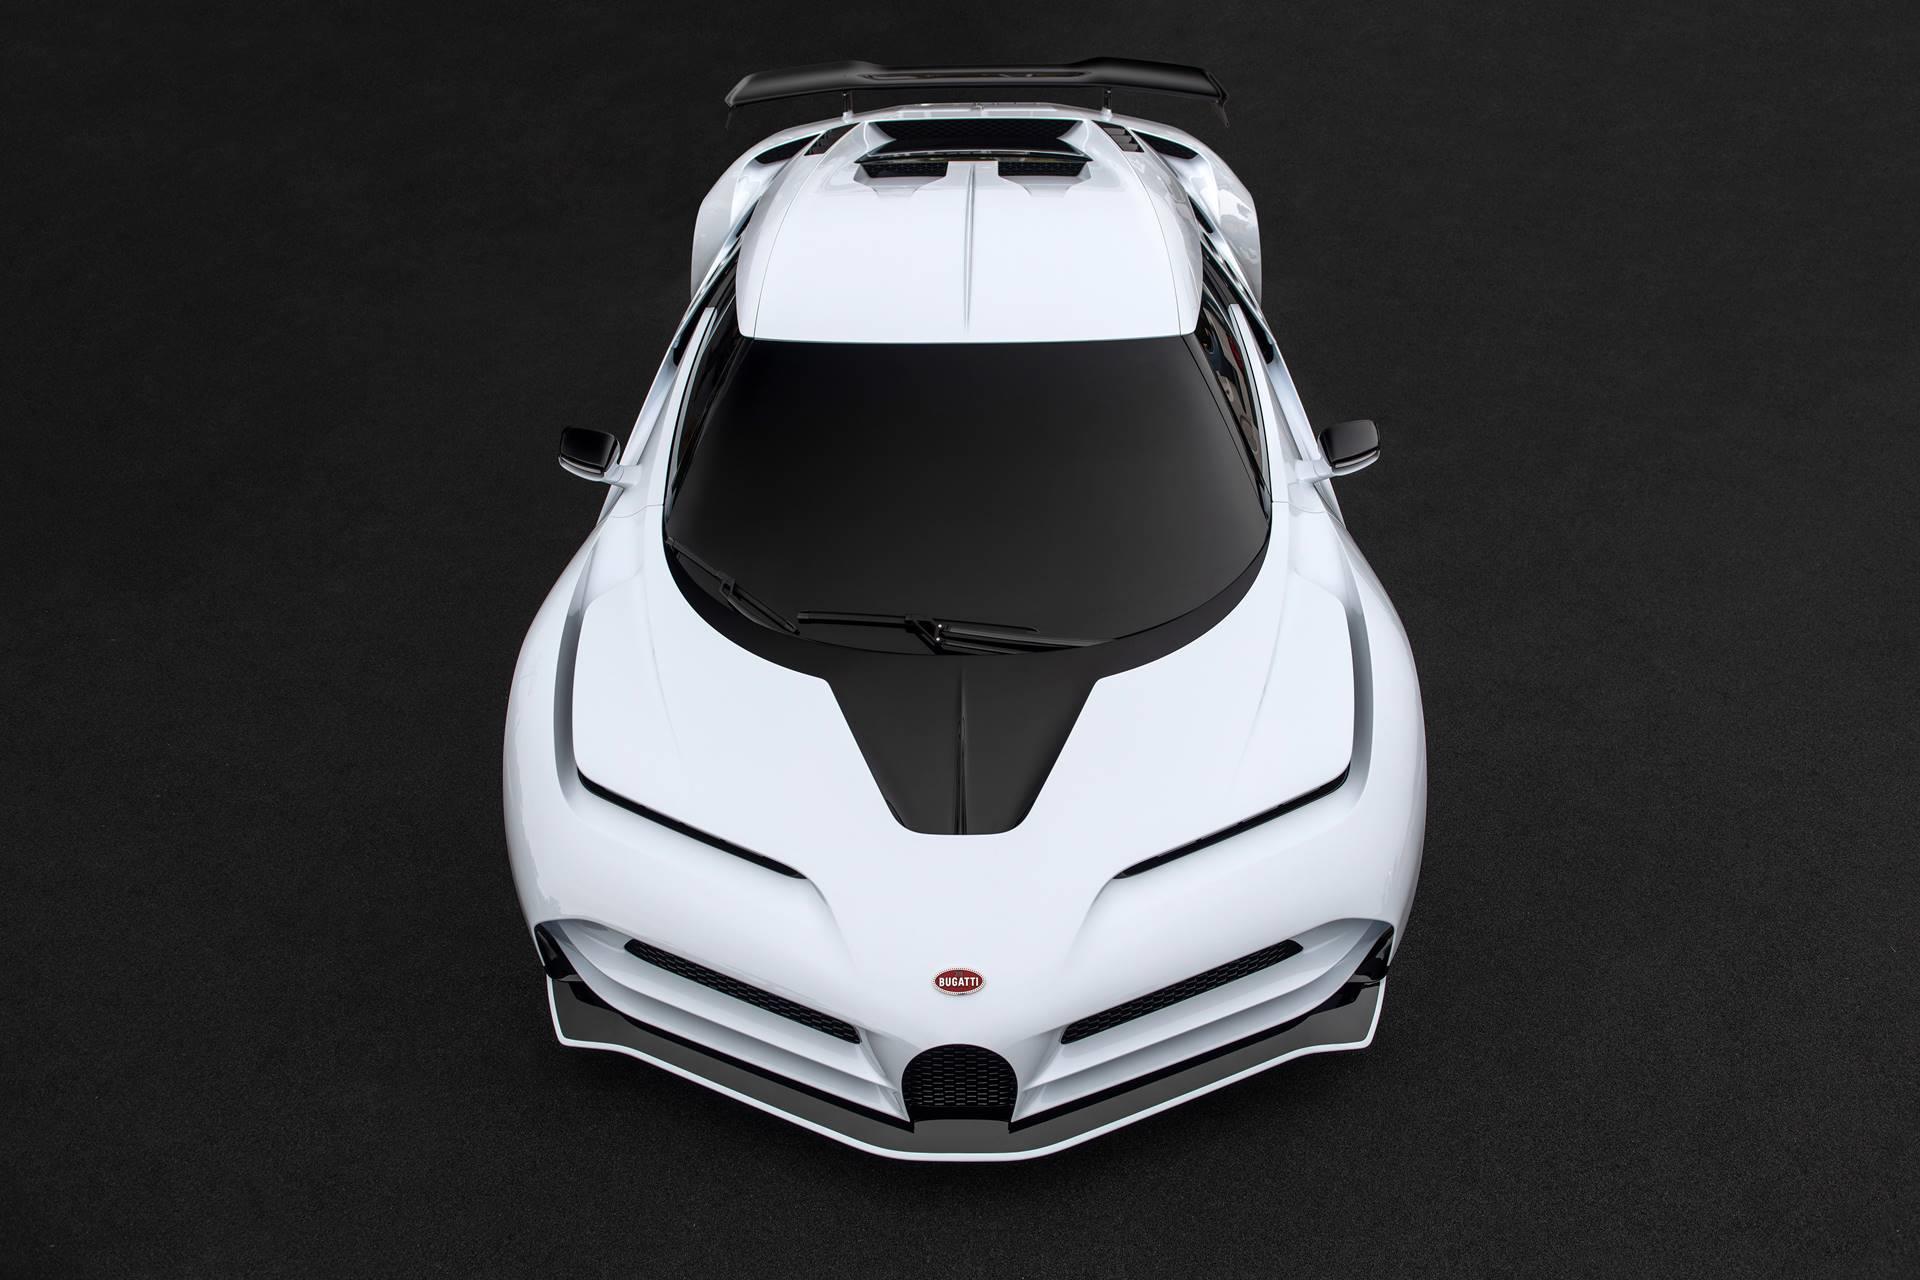 2019 Bugatti Centodieci